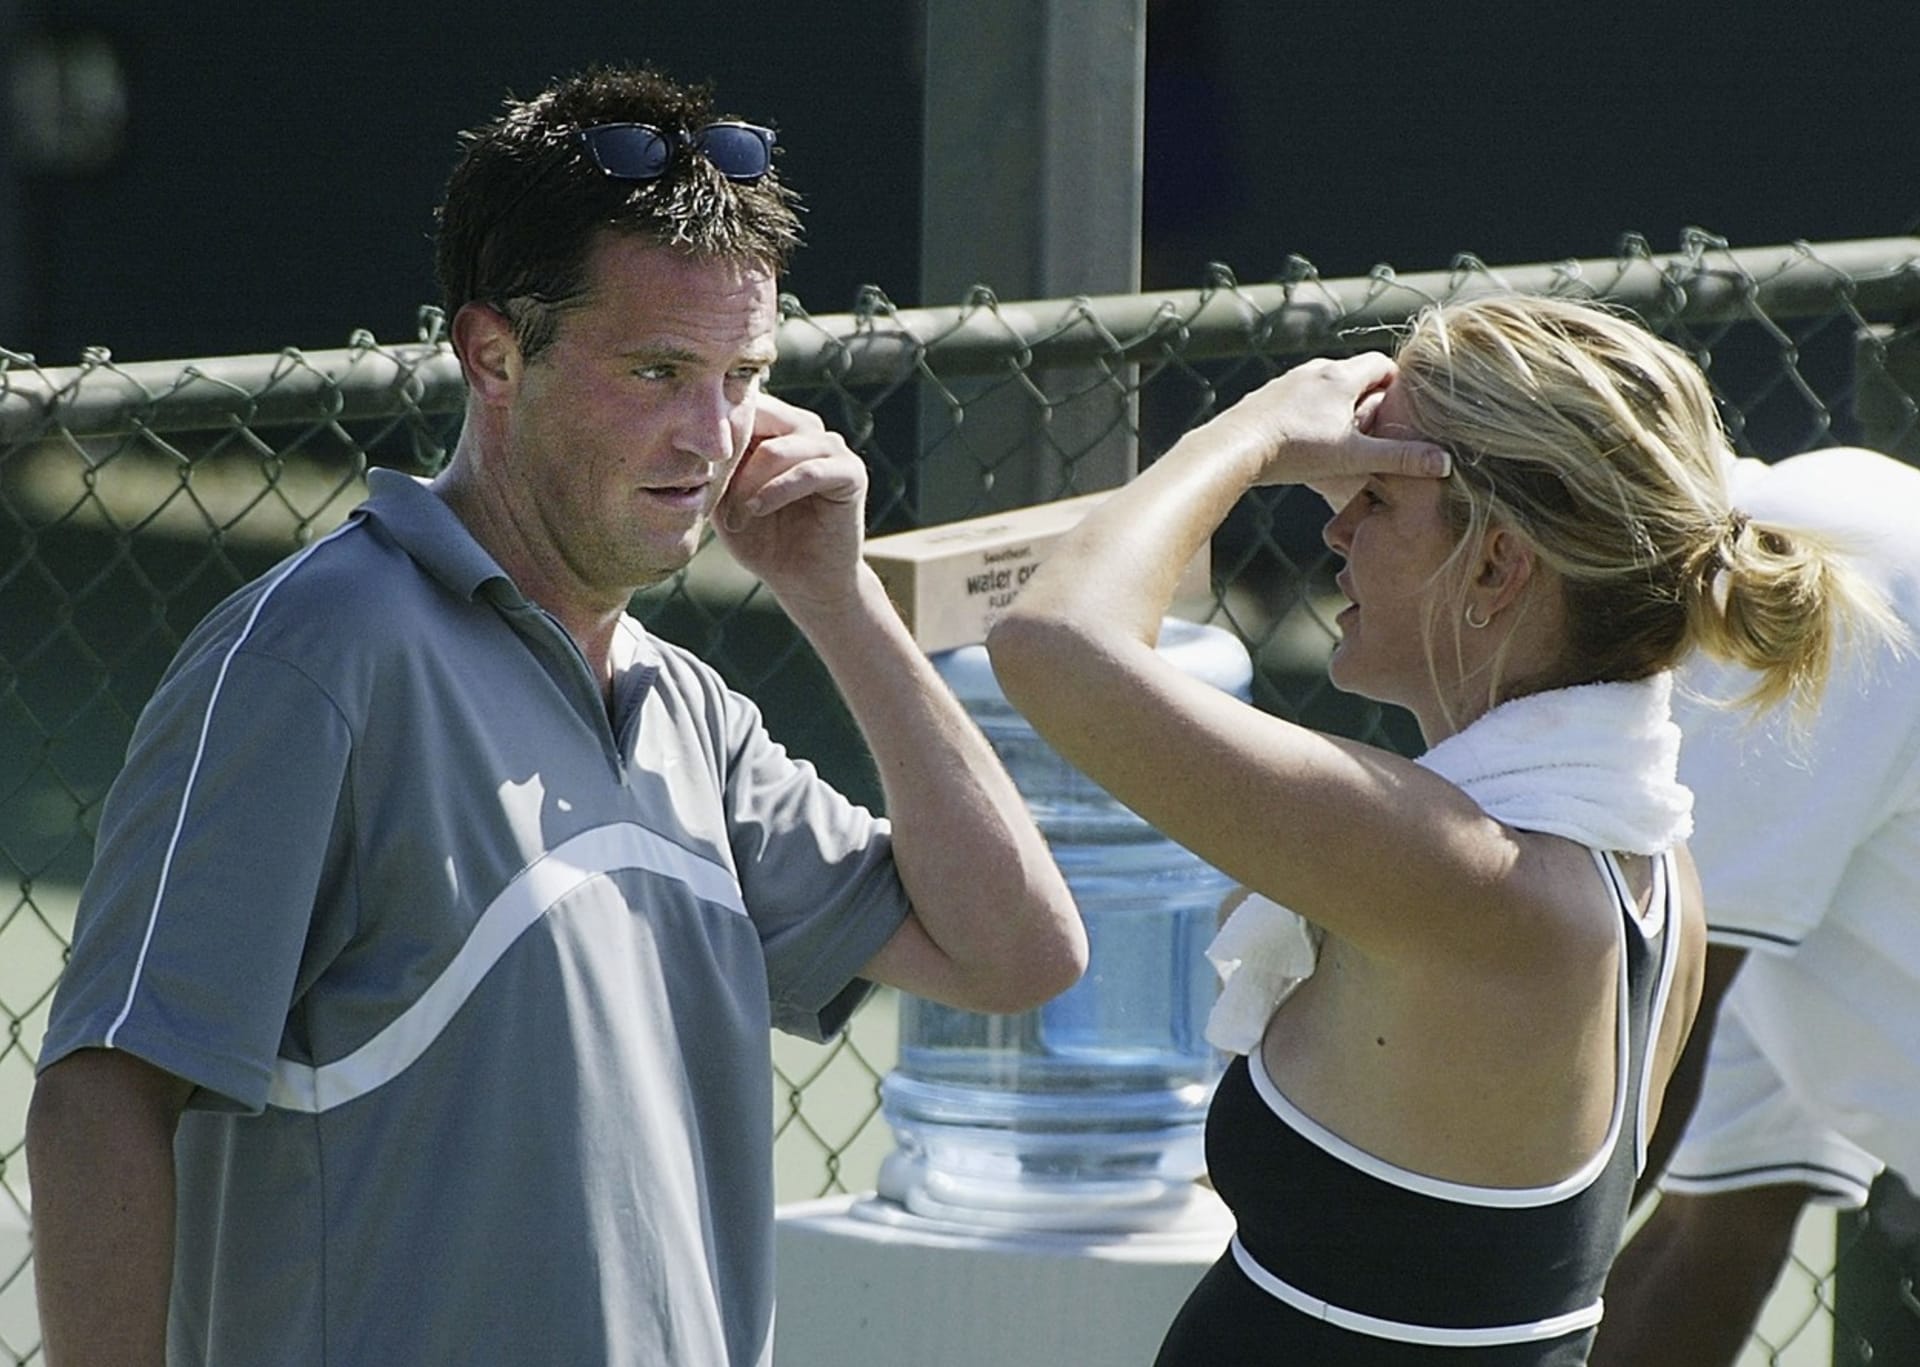 Kromě společné vášně pro tenis je však zřejmě mnoho nespojovalo, a tak vztah v roce 2003 skončil.